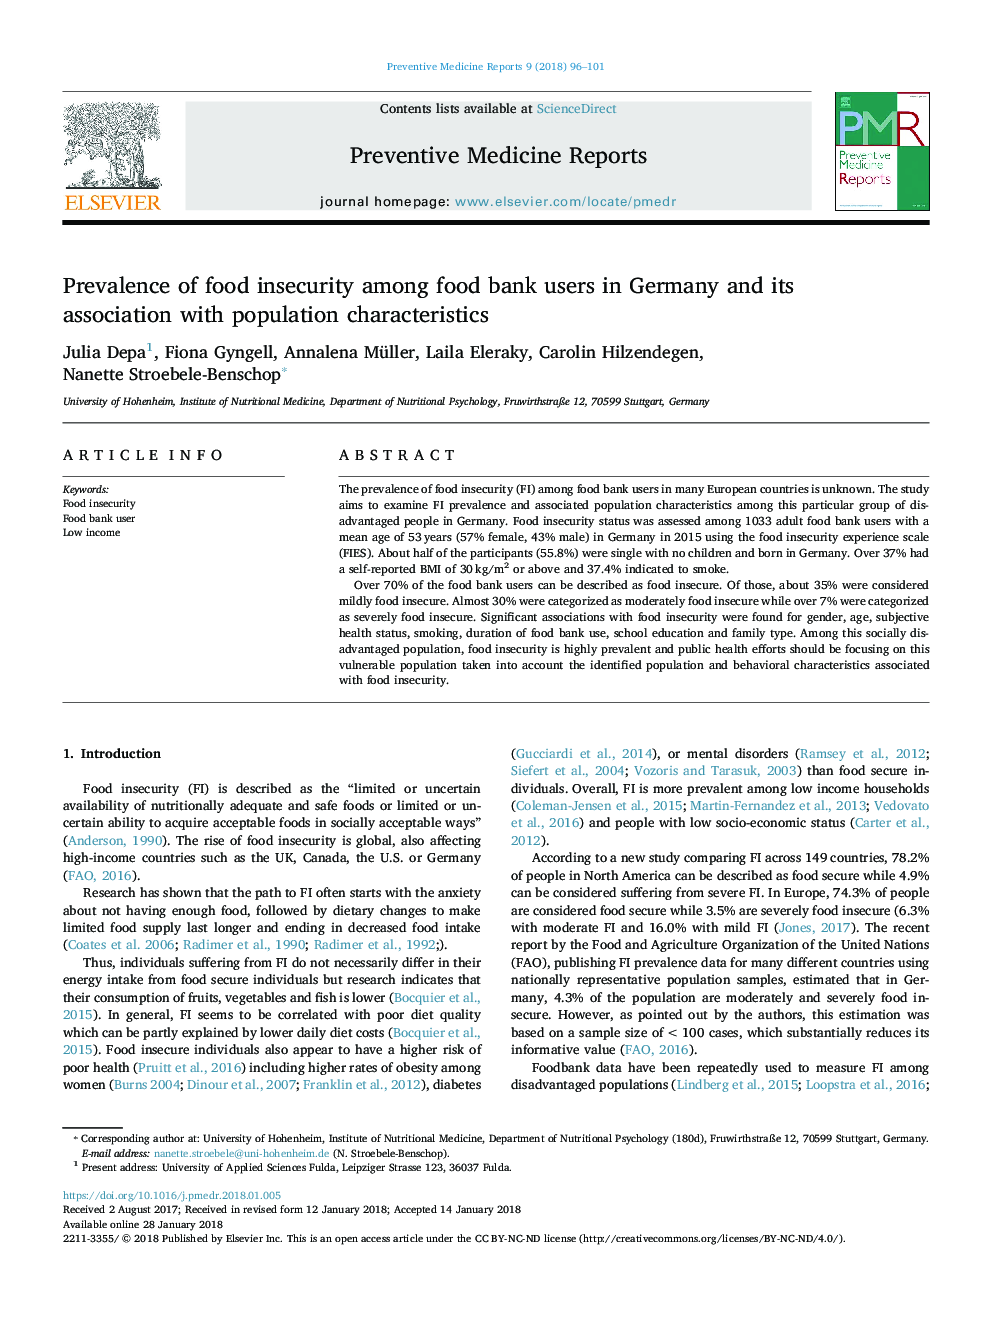 شیوع ناامنی غذایی در بین کاربران بانک غذایی در آلمان و ارتباط آن با ویژگی های جمعیتی 